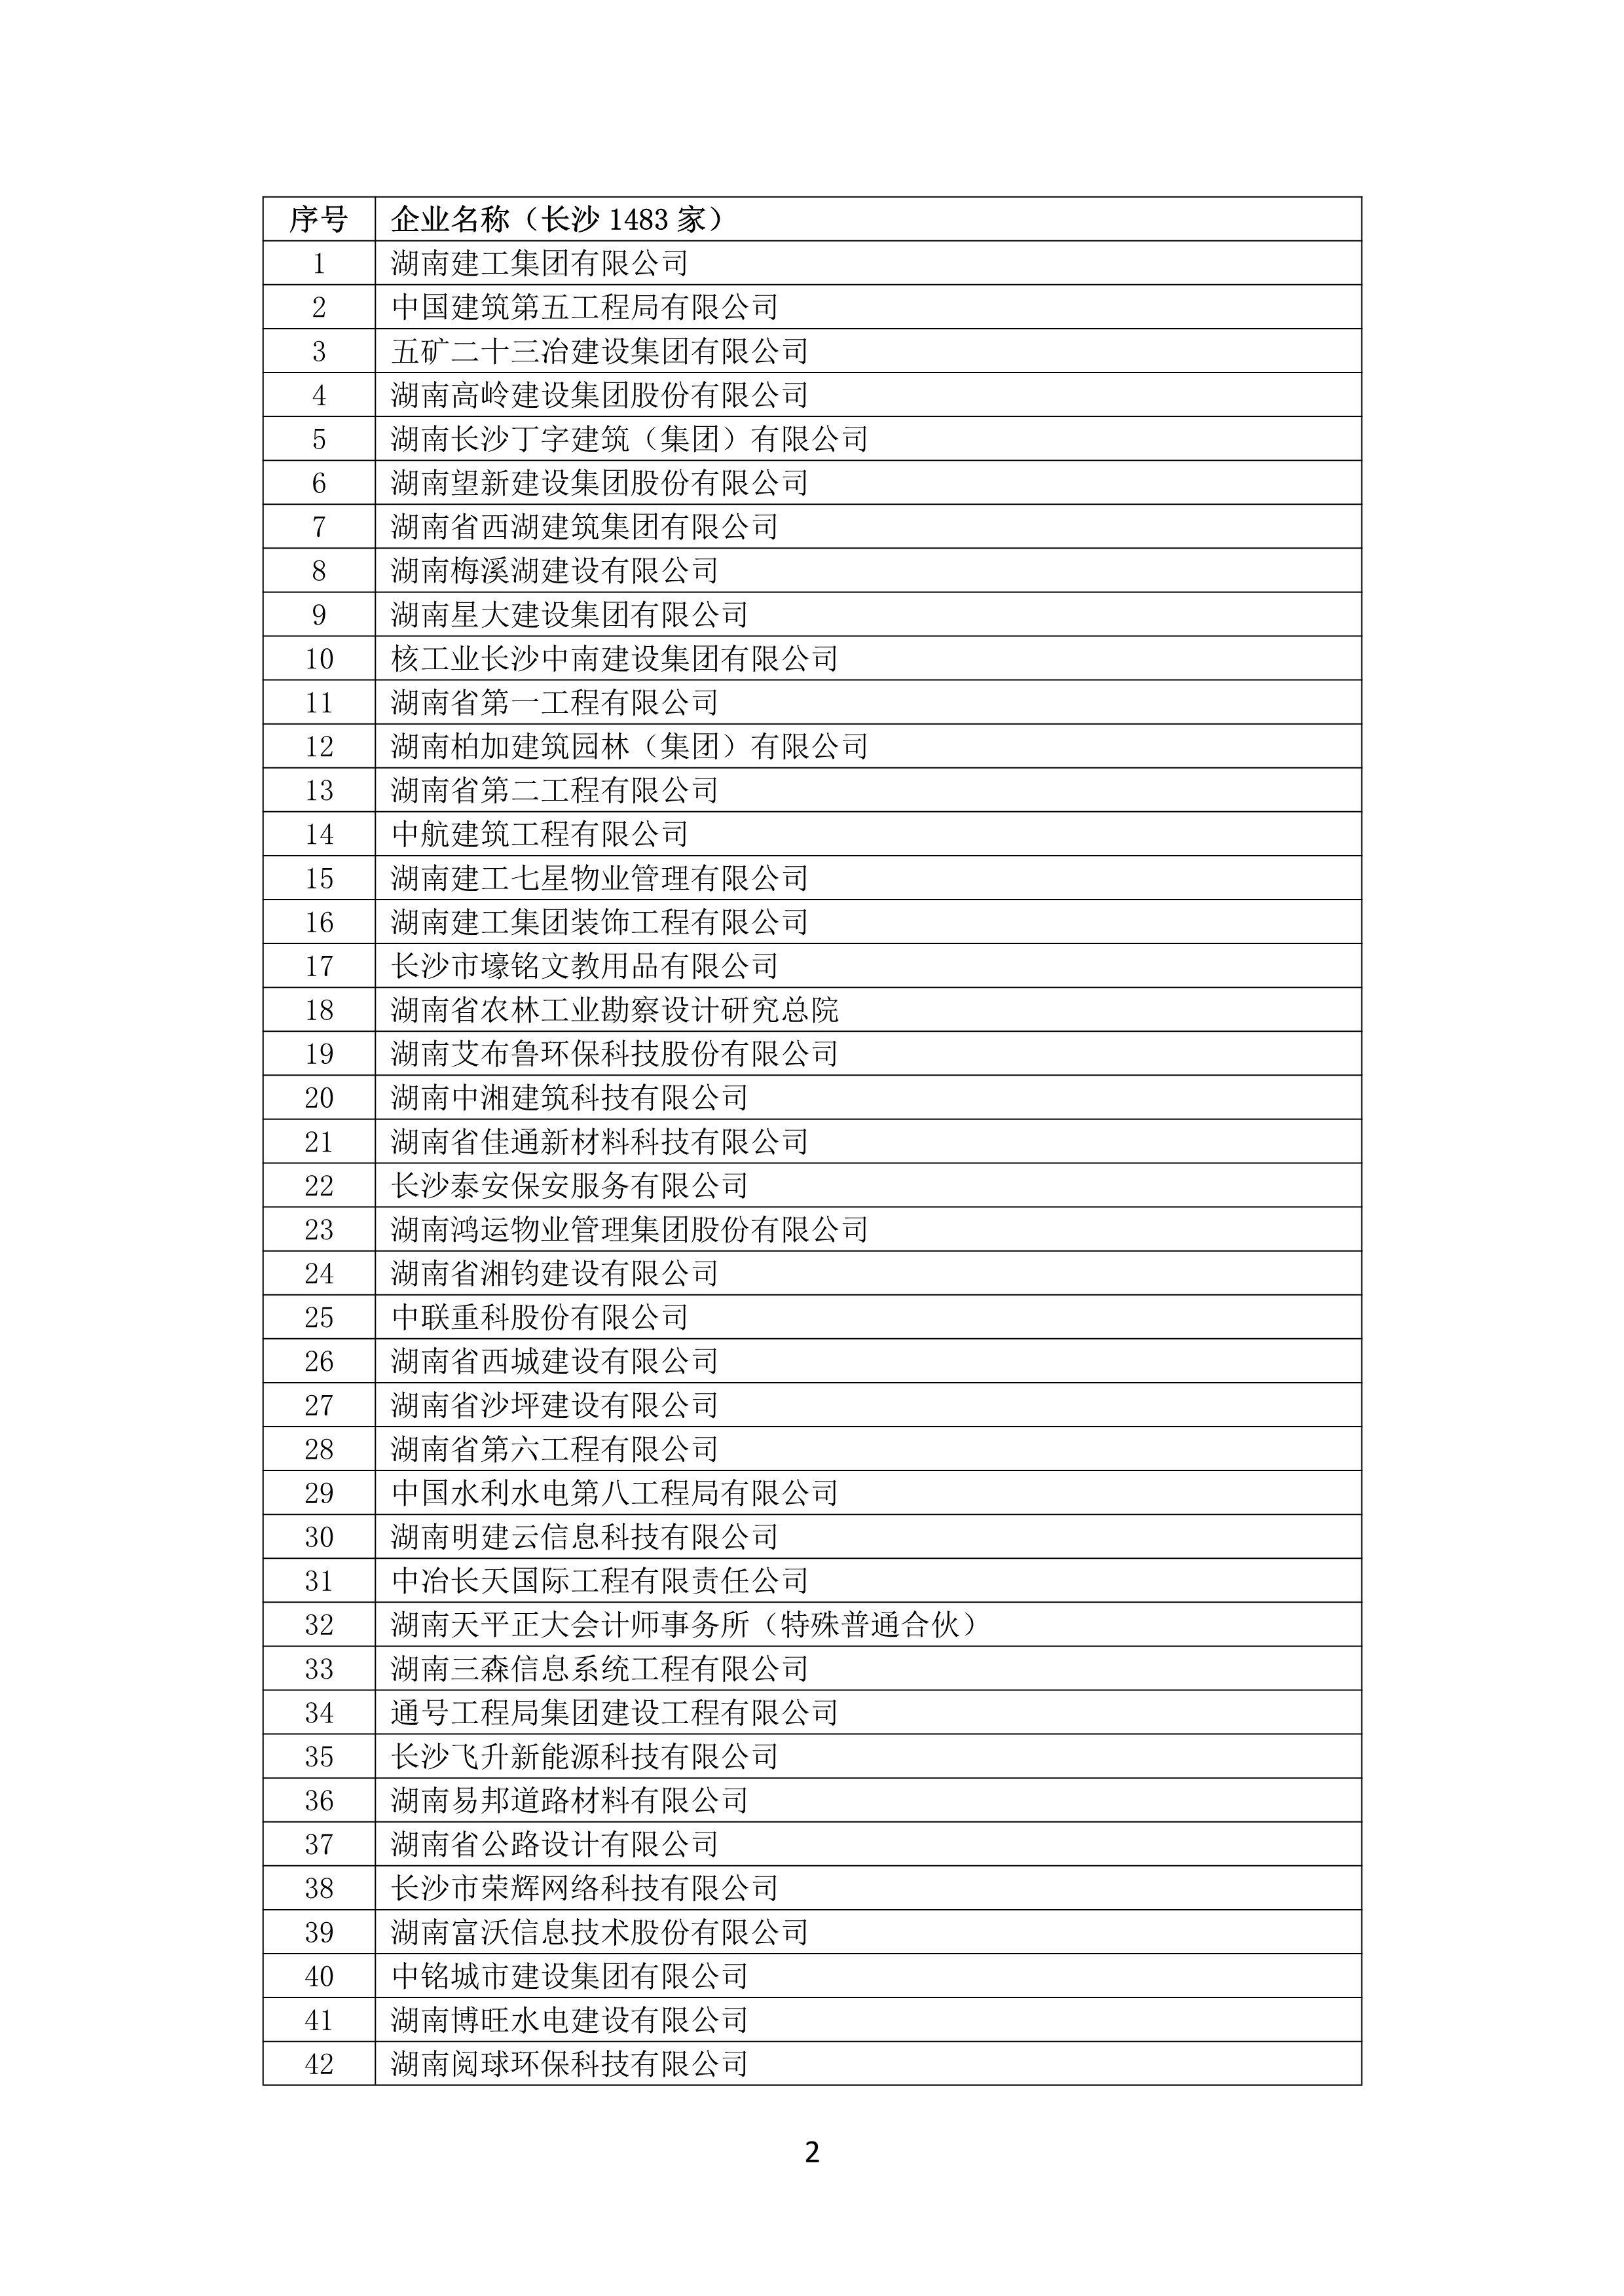 2021 年(nián)度湖南省守合同重信用企業名單_3.png